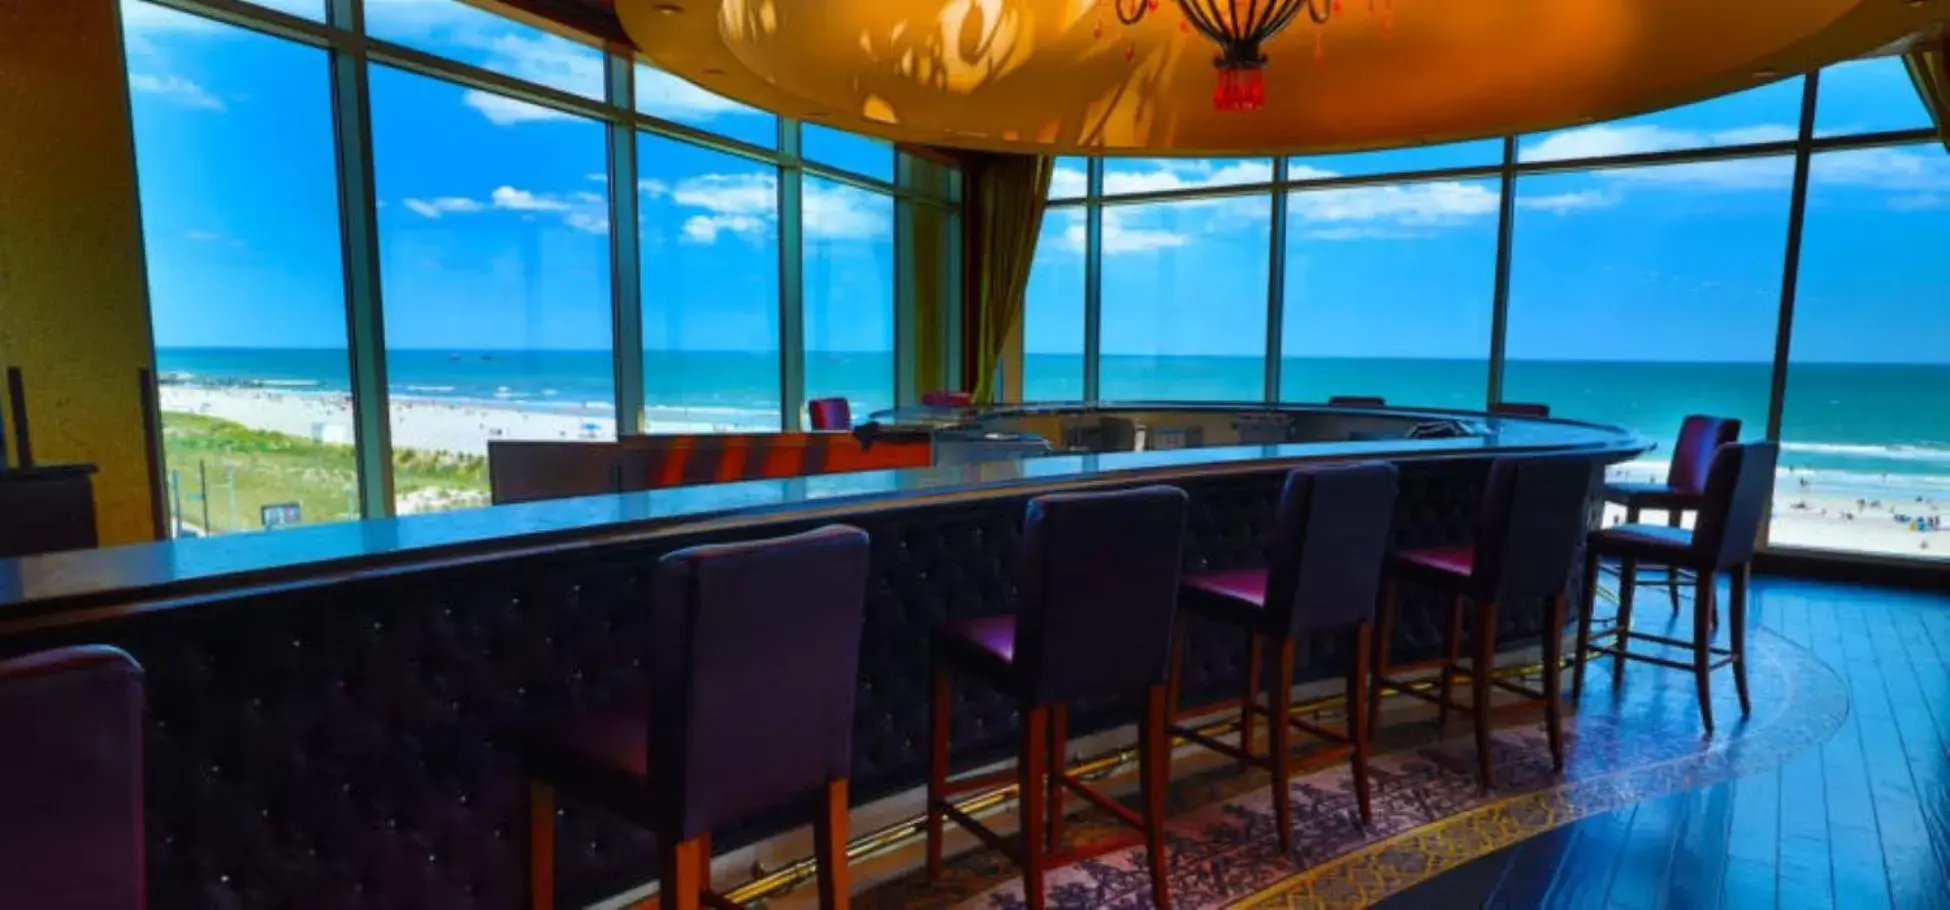 Sea view in Bally's Atlantic City Hotel & Casino